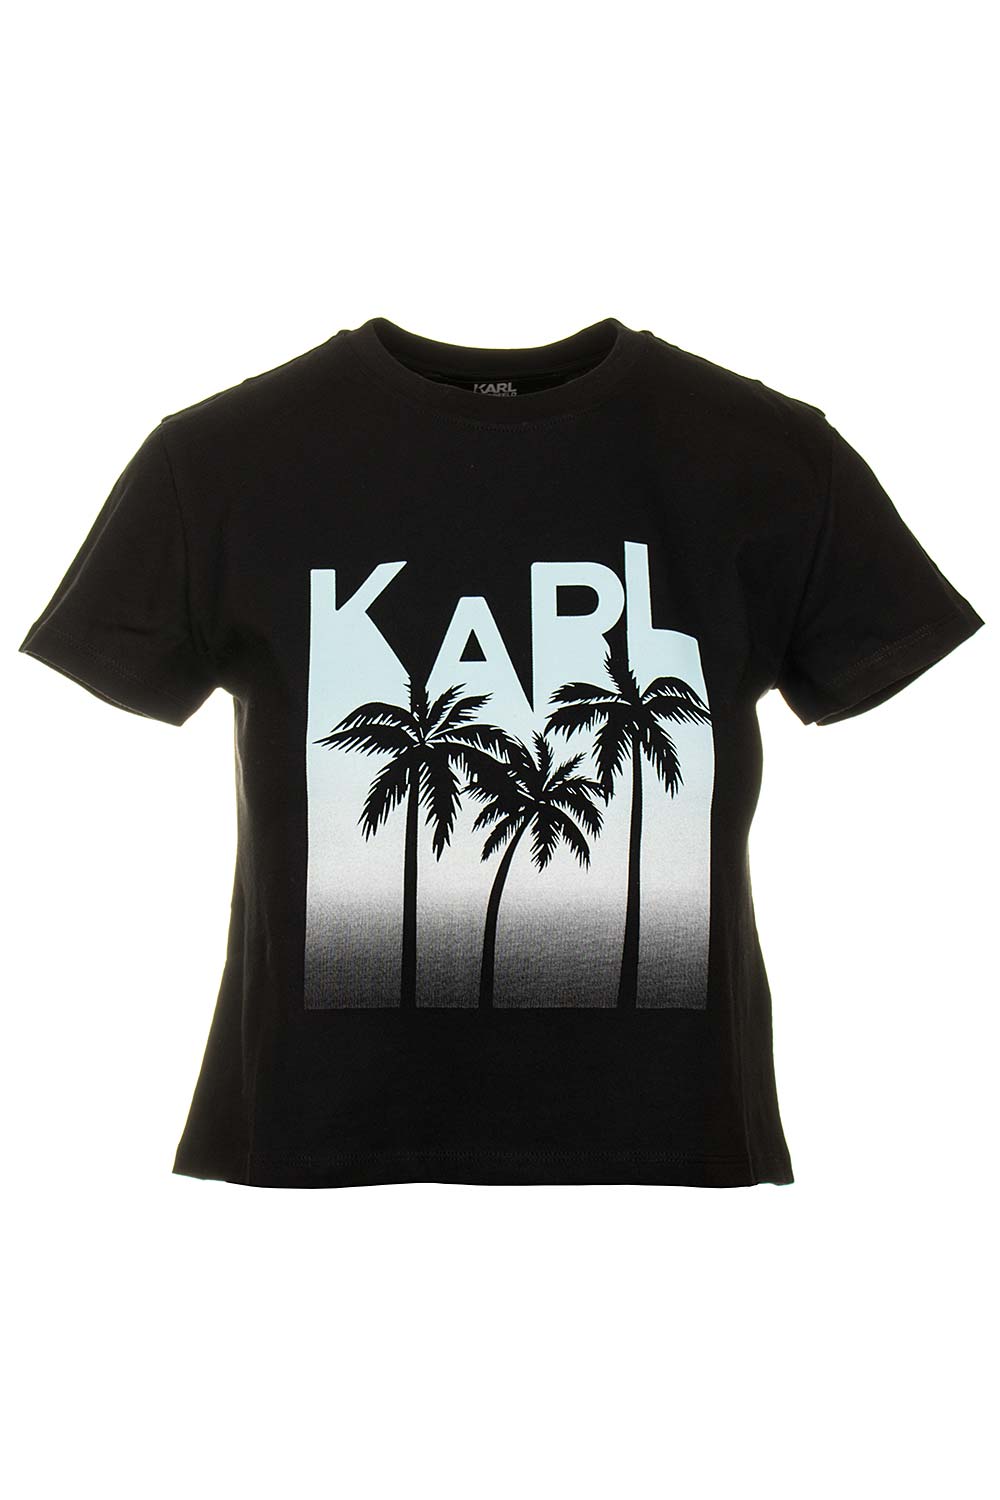 Karl Lagerfeld dámské tričko Crop Top černé Velikost: XS